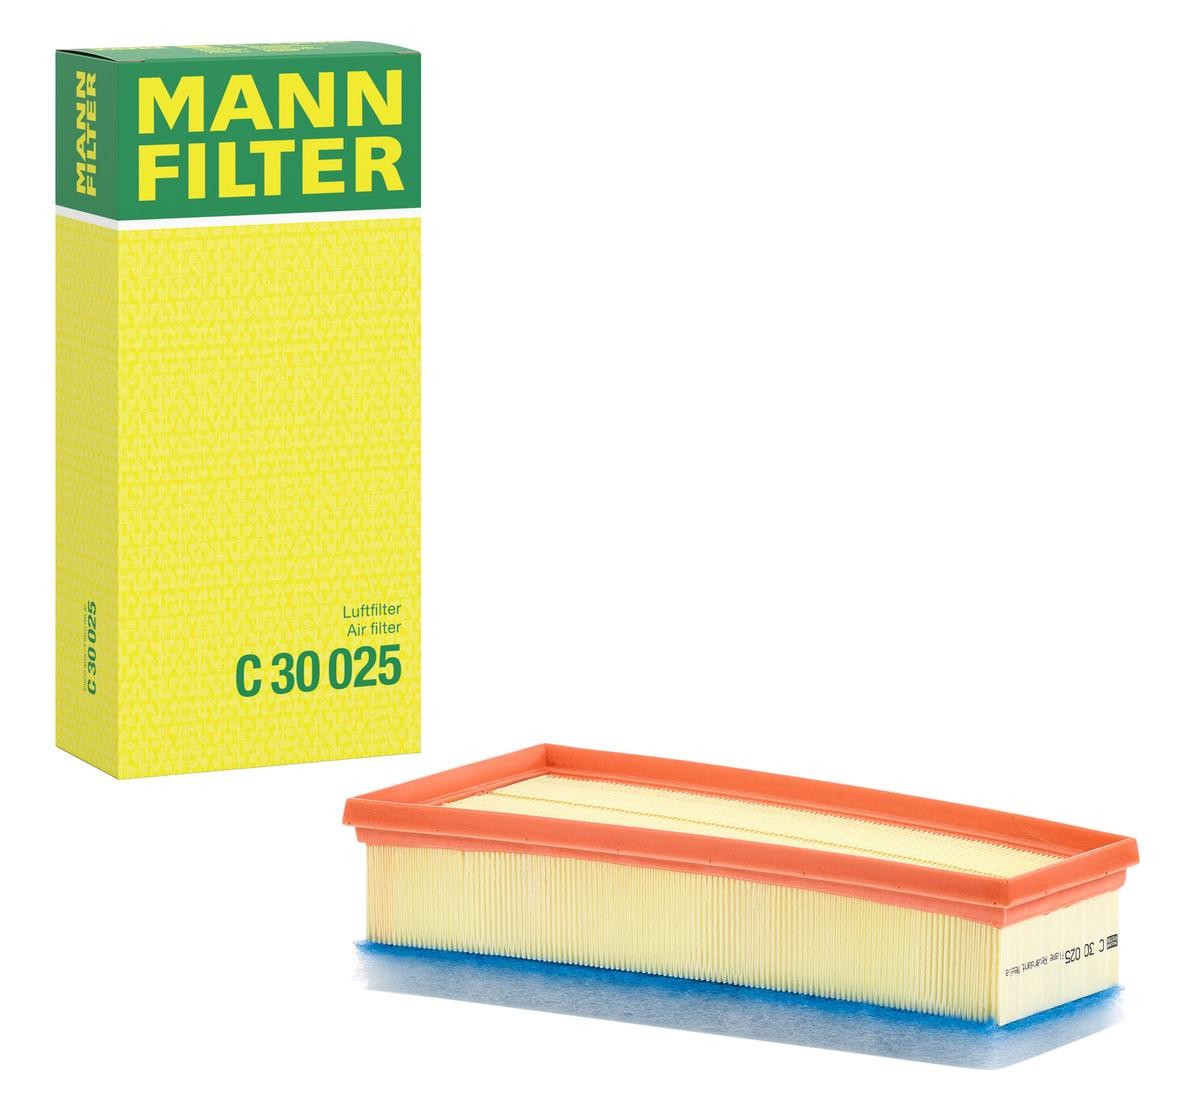 MANN-FILTER Air filter C 30 025